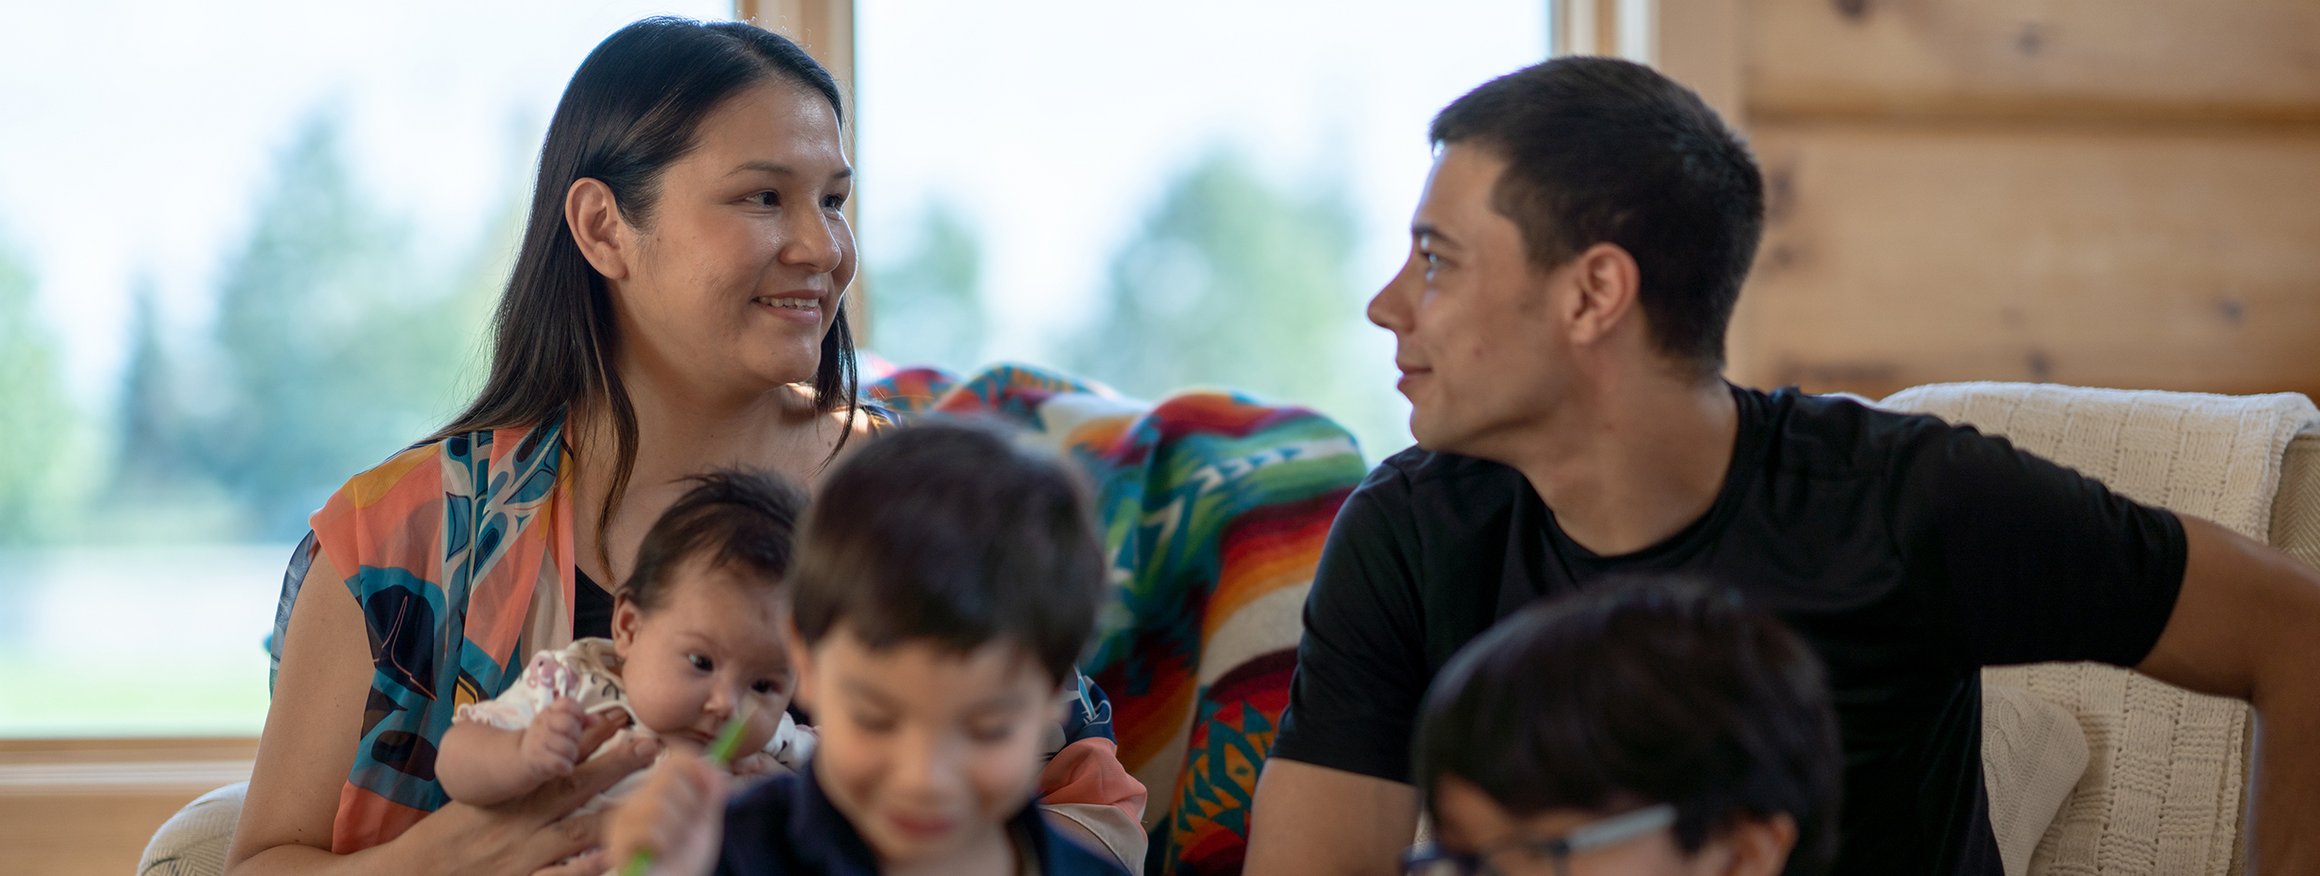 Eine Indigene Familie sitzt auf der Couch. Die Kinder spielen. Die Frau hat ein Baby auf dem Arm und lächelt ihren Mann verlegen an.